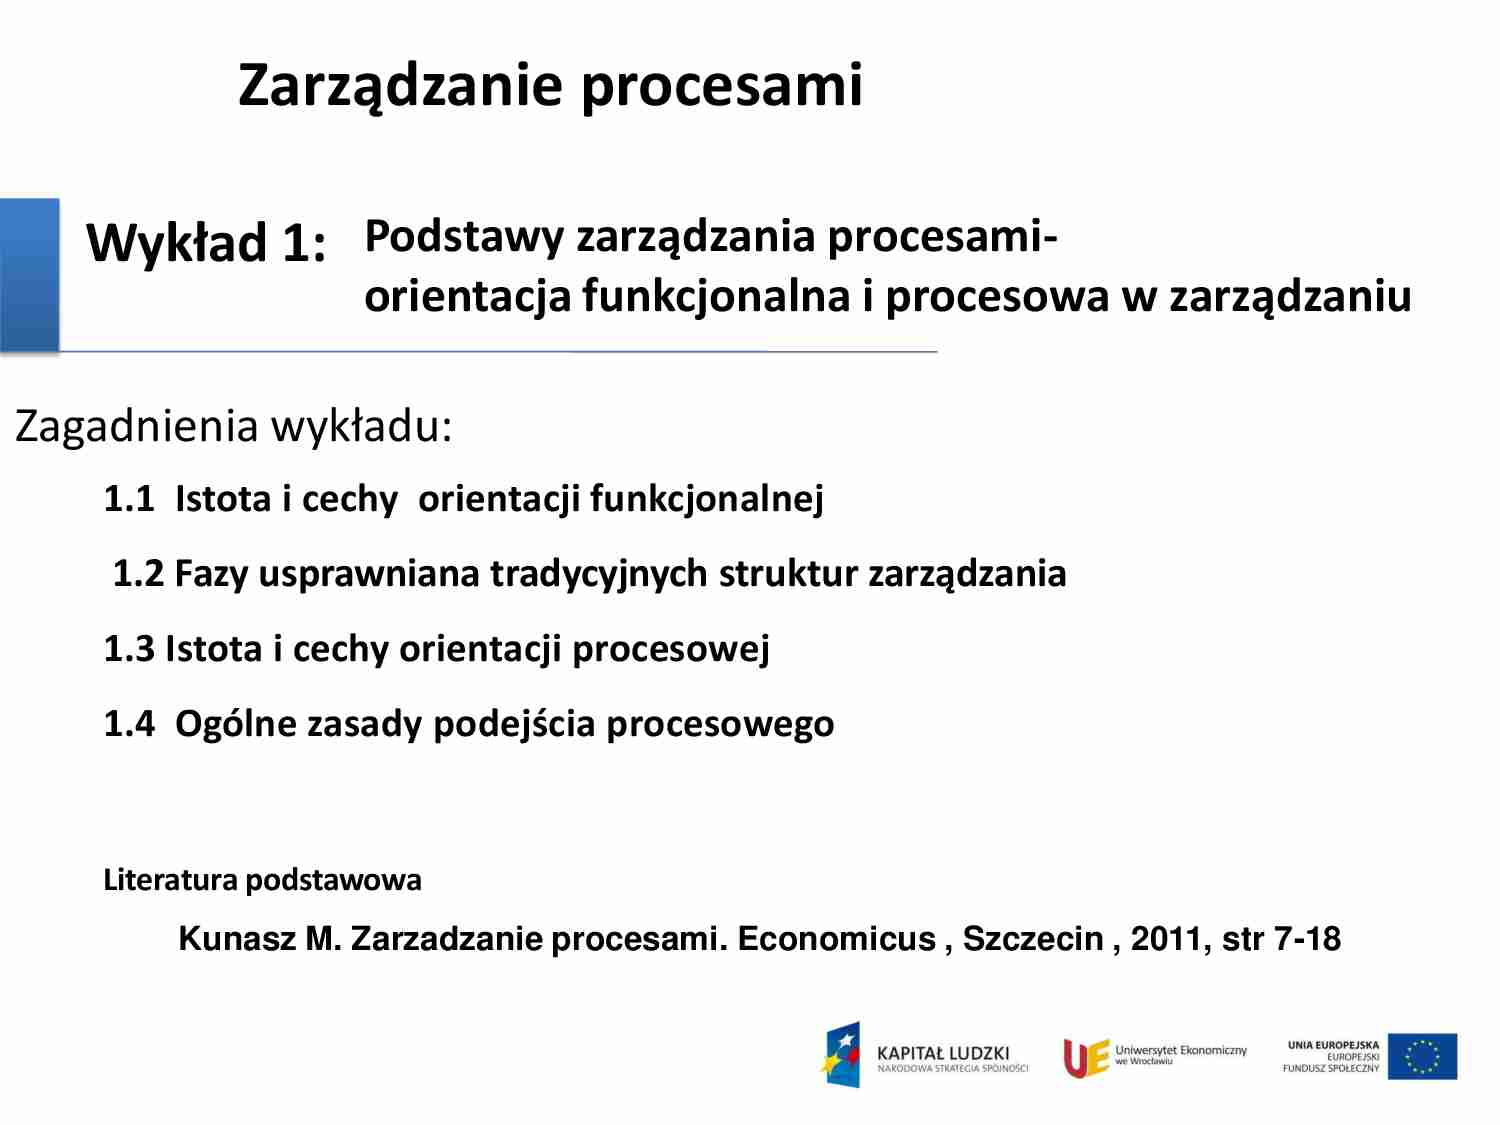 wykład - zarządzanie procesami niestacjonarne 2013r - strona 1